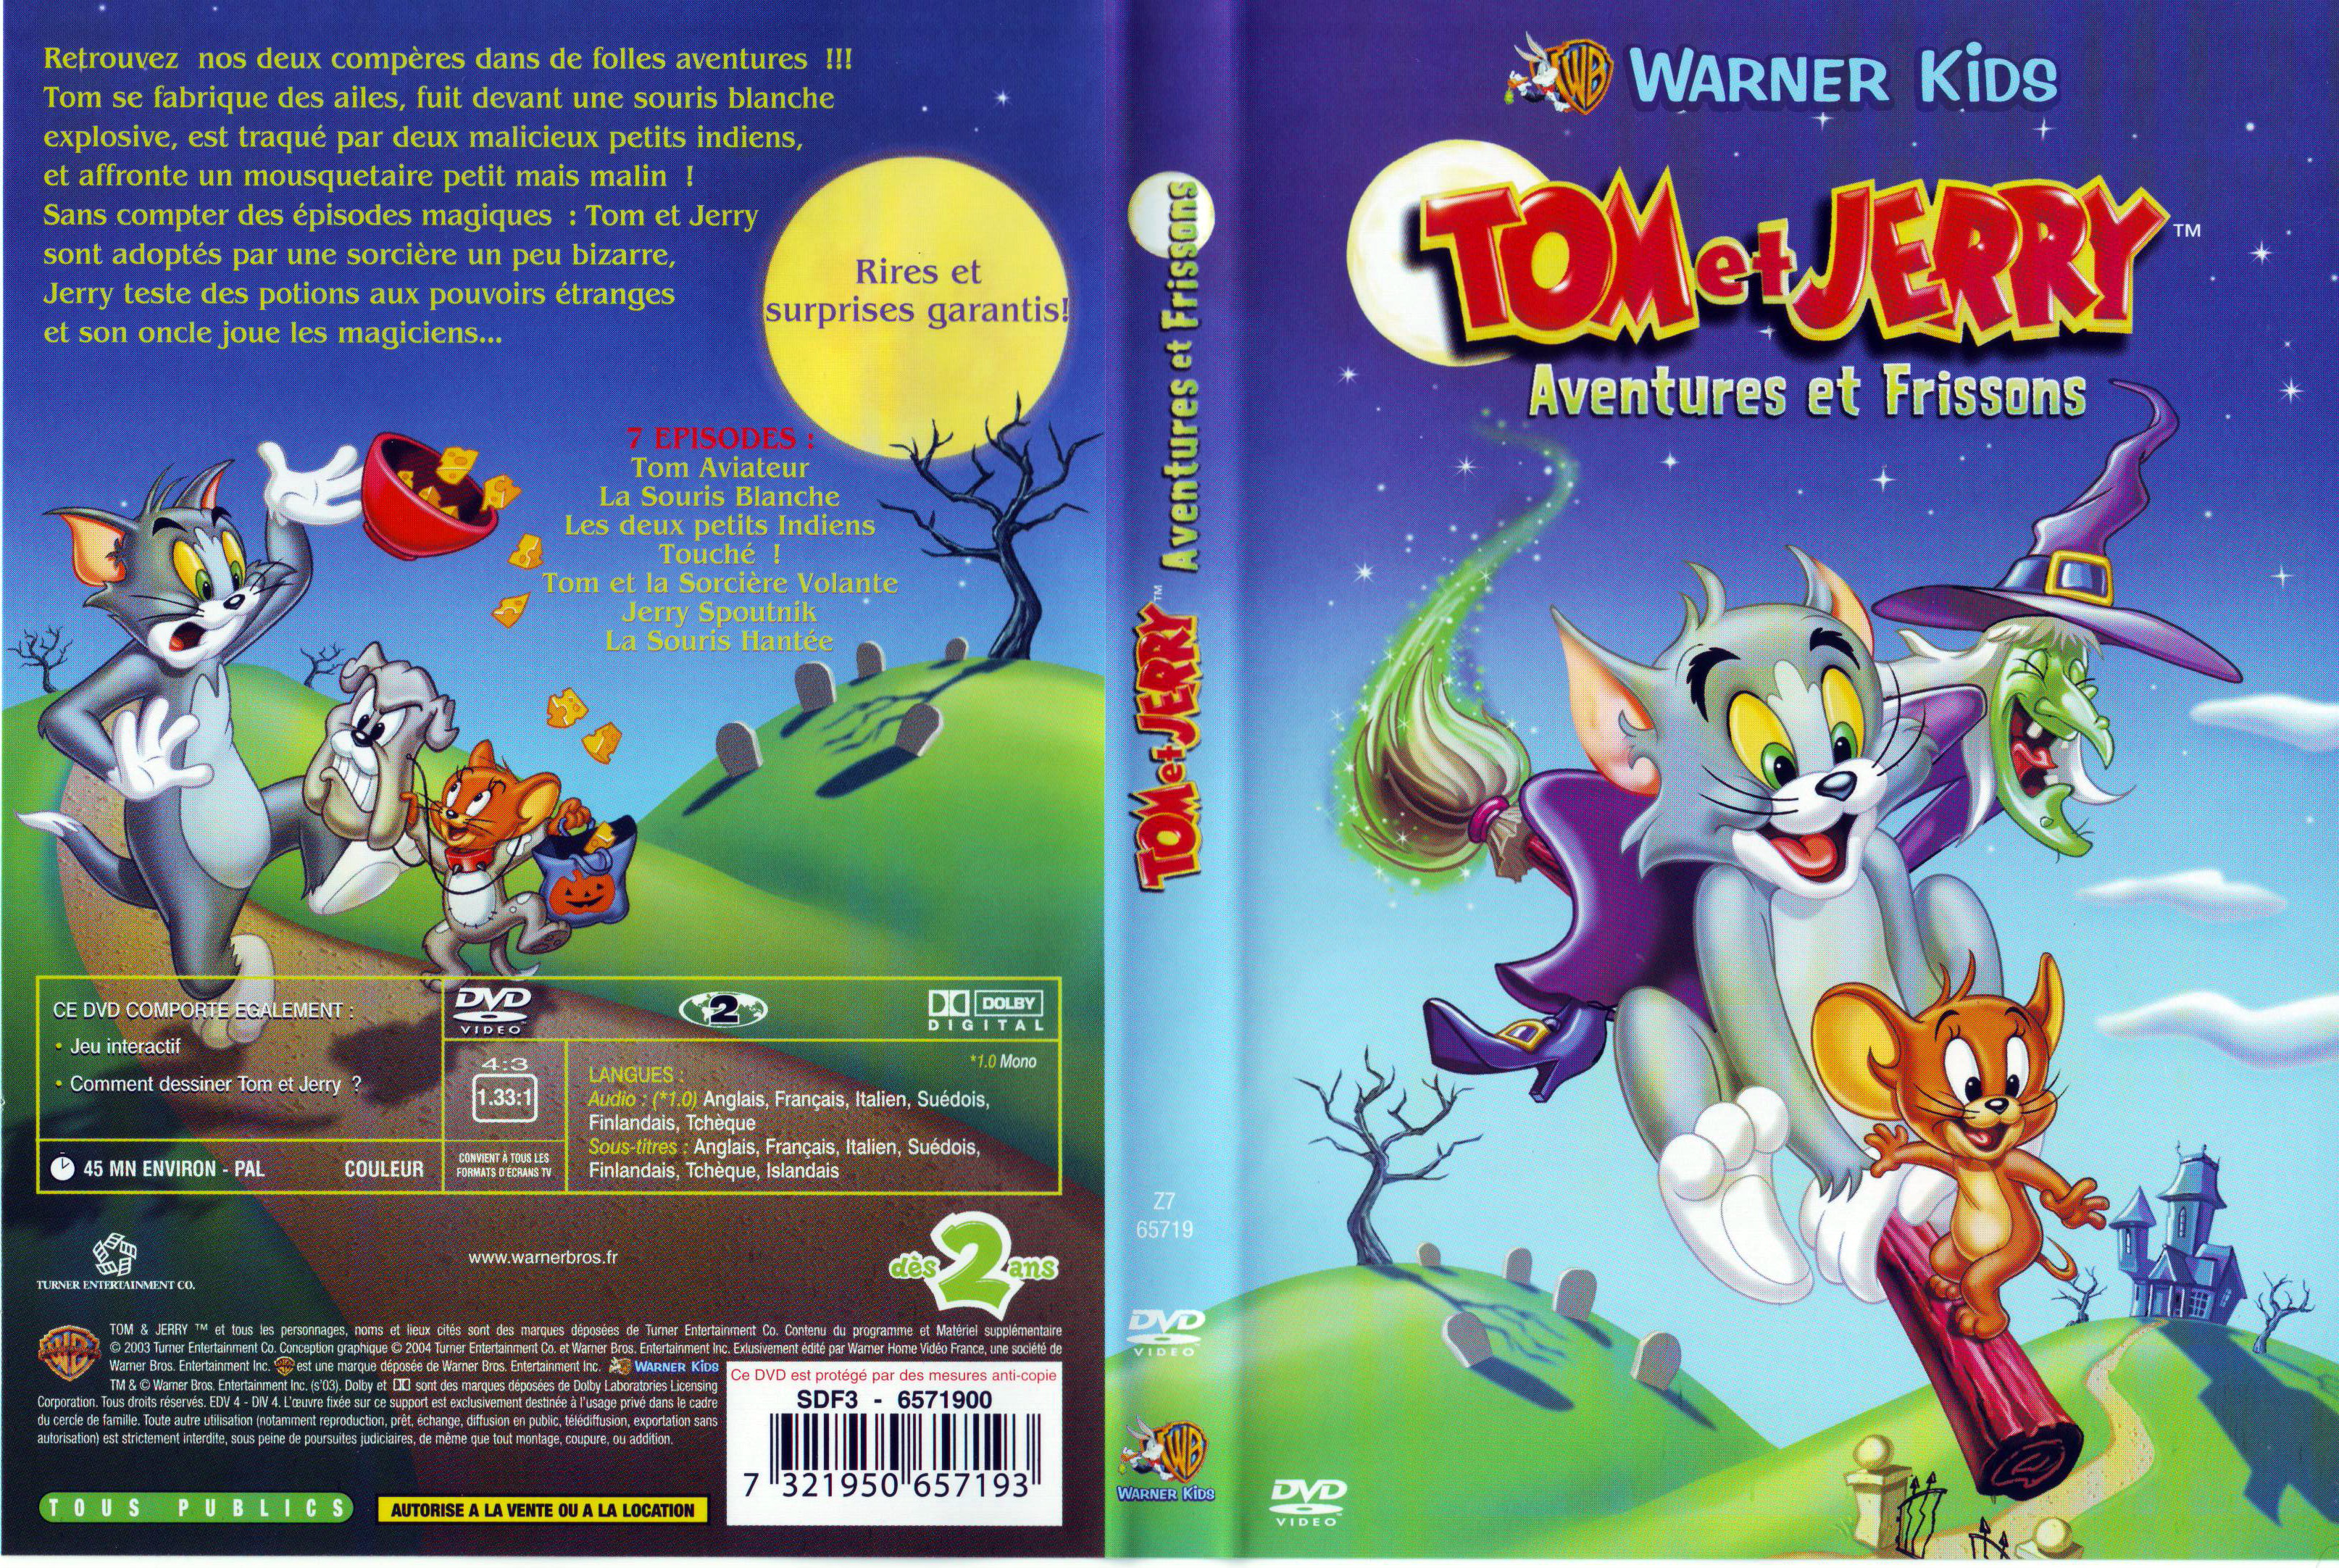 Jaquette DVD Tom et Jerry aventures et frissons